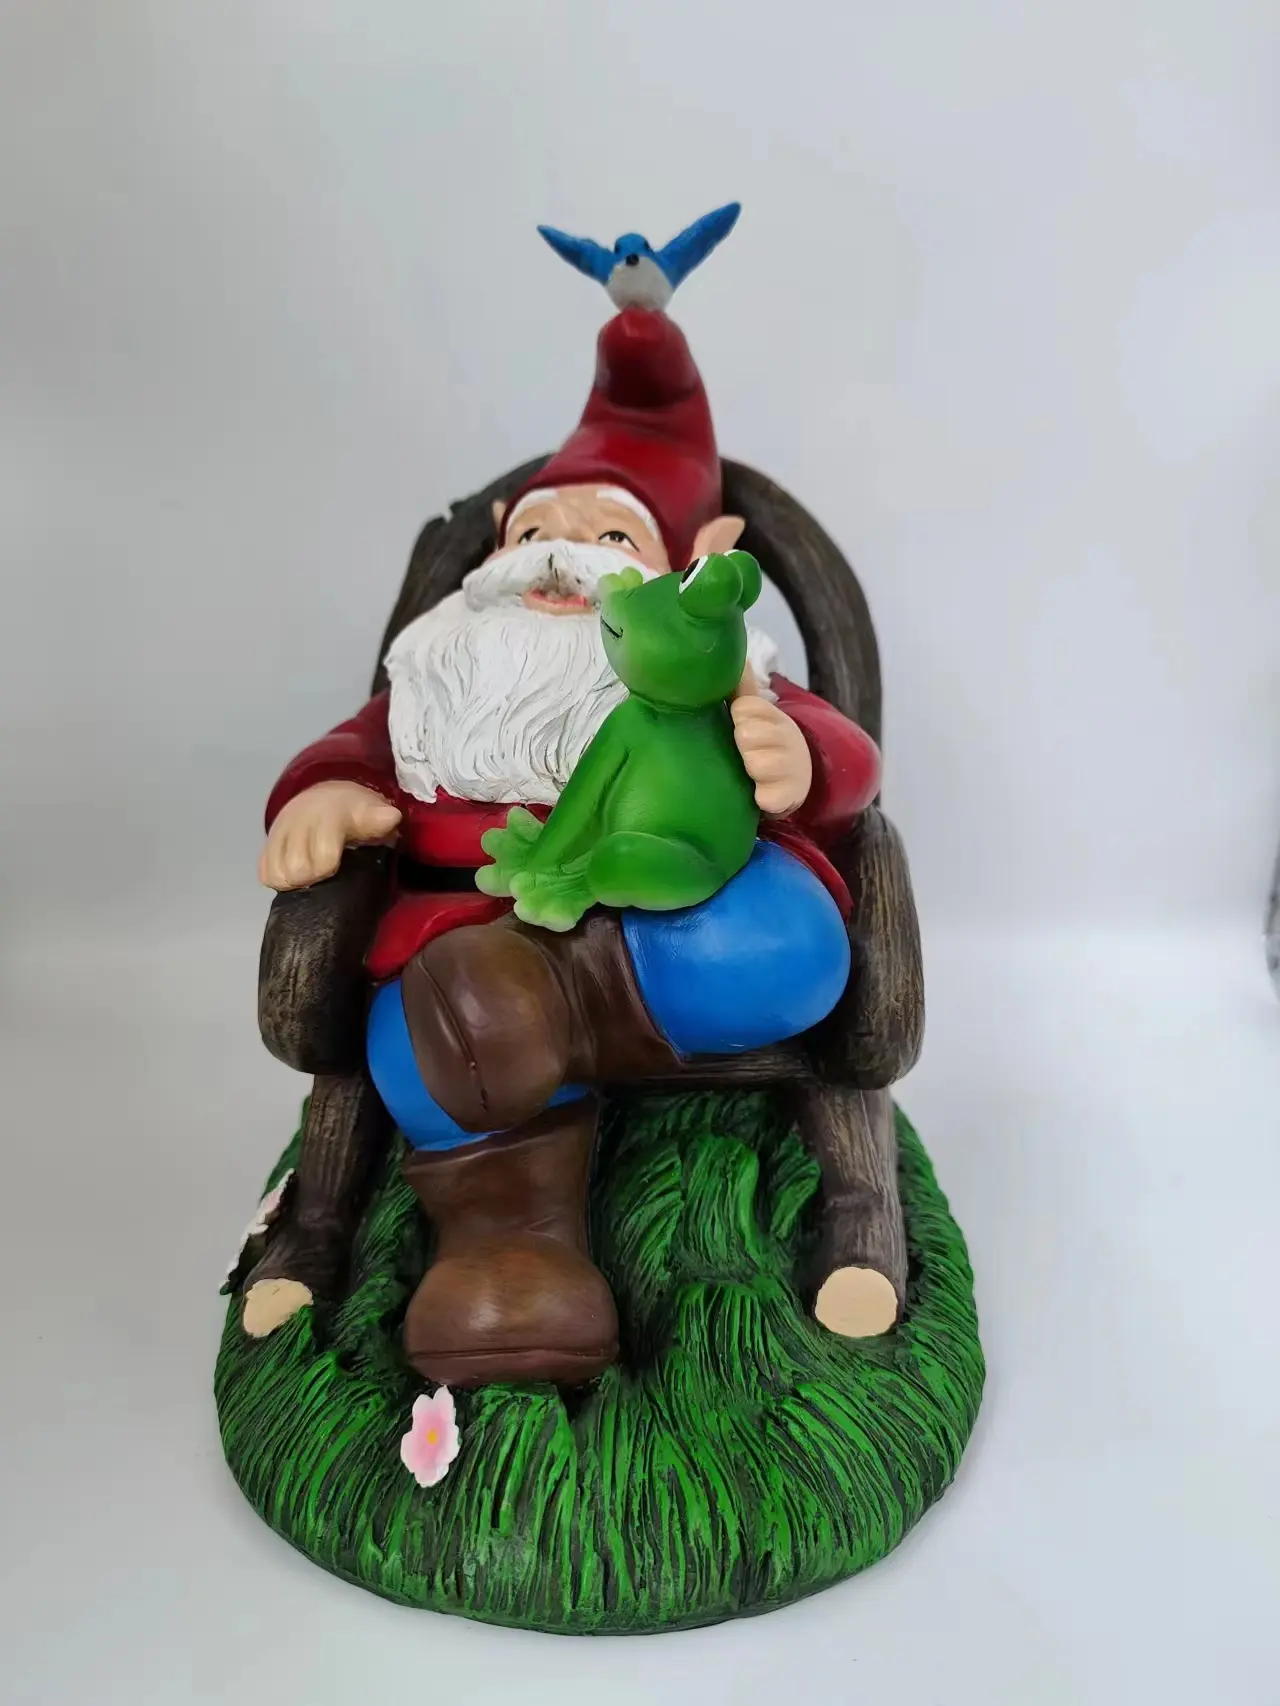 Kreative niedliche sitzende Weihnachtsmann-Weihnachts dekorationen, die Weihnachtsmann-Beleuchtungs figur-Garten dekor ruhen